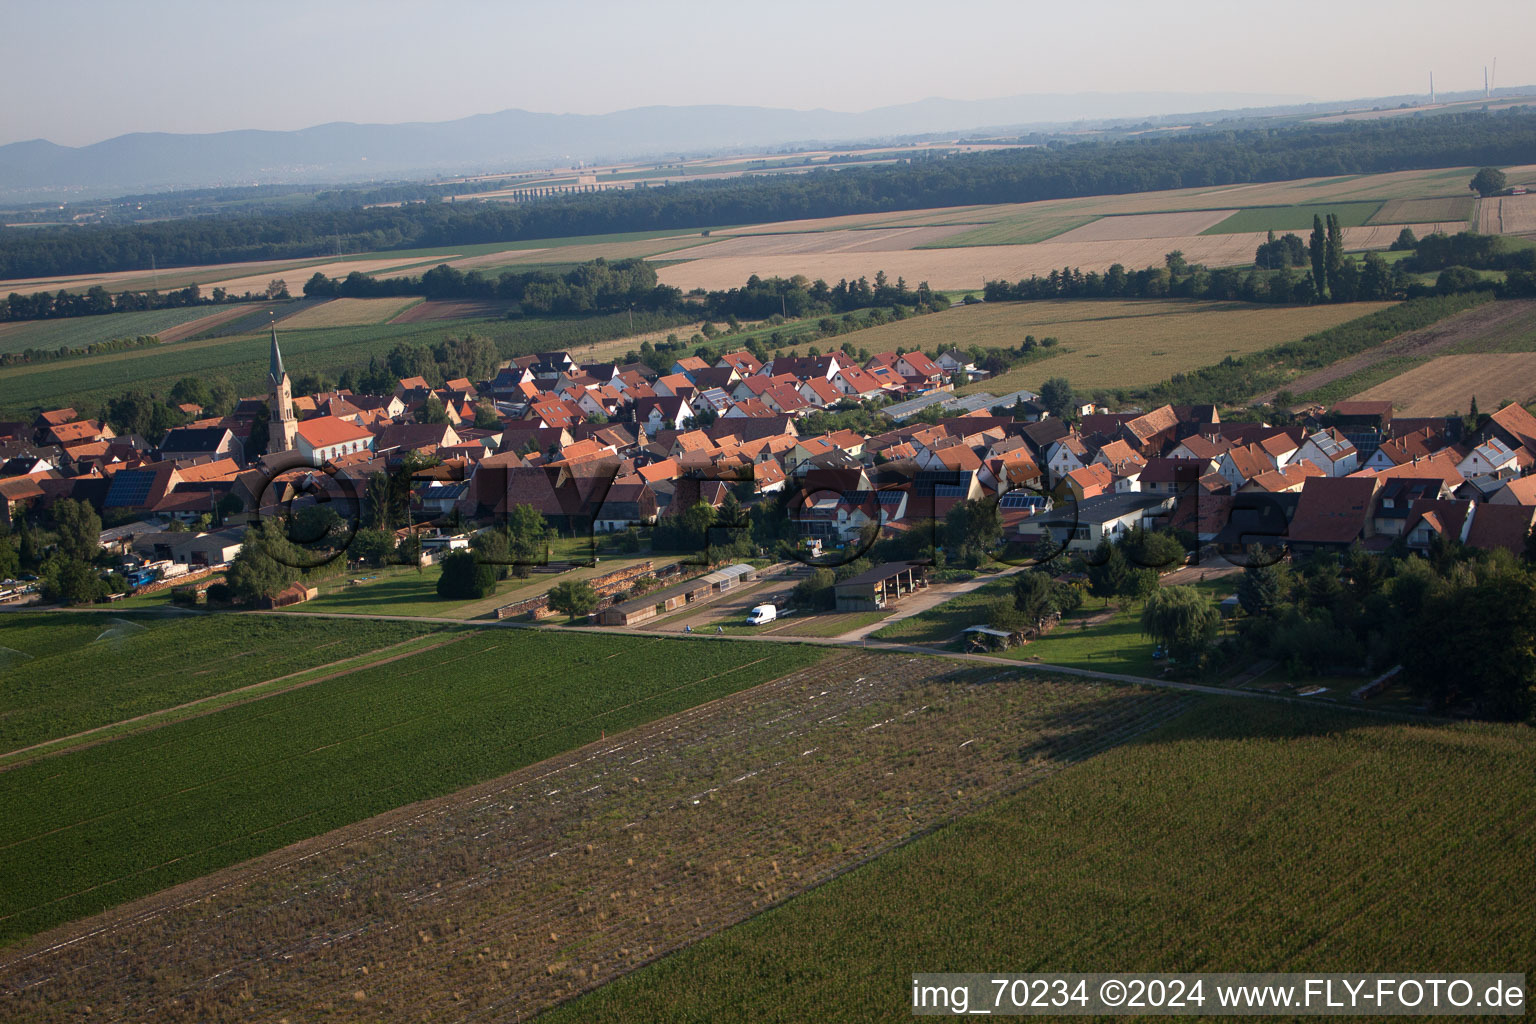 Erlenbach bei Kandel dans le département Rhénanie-Palatinat, Allemagne vu d'un drone